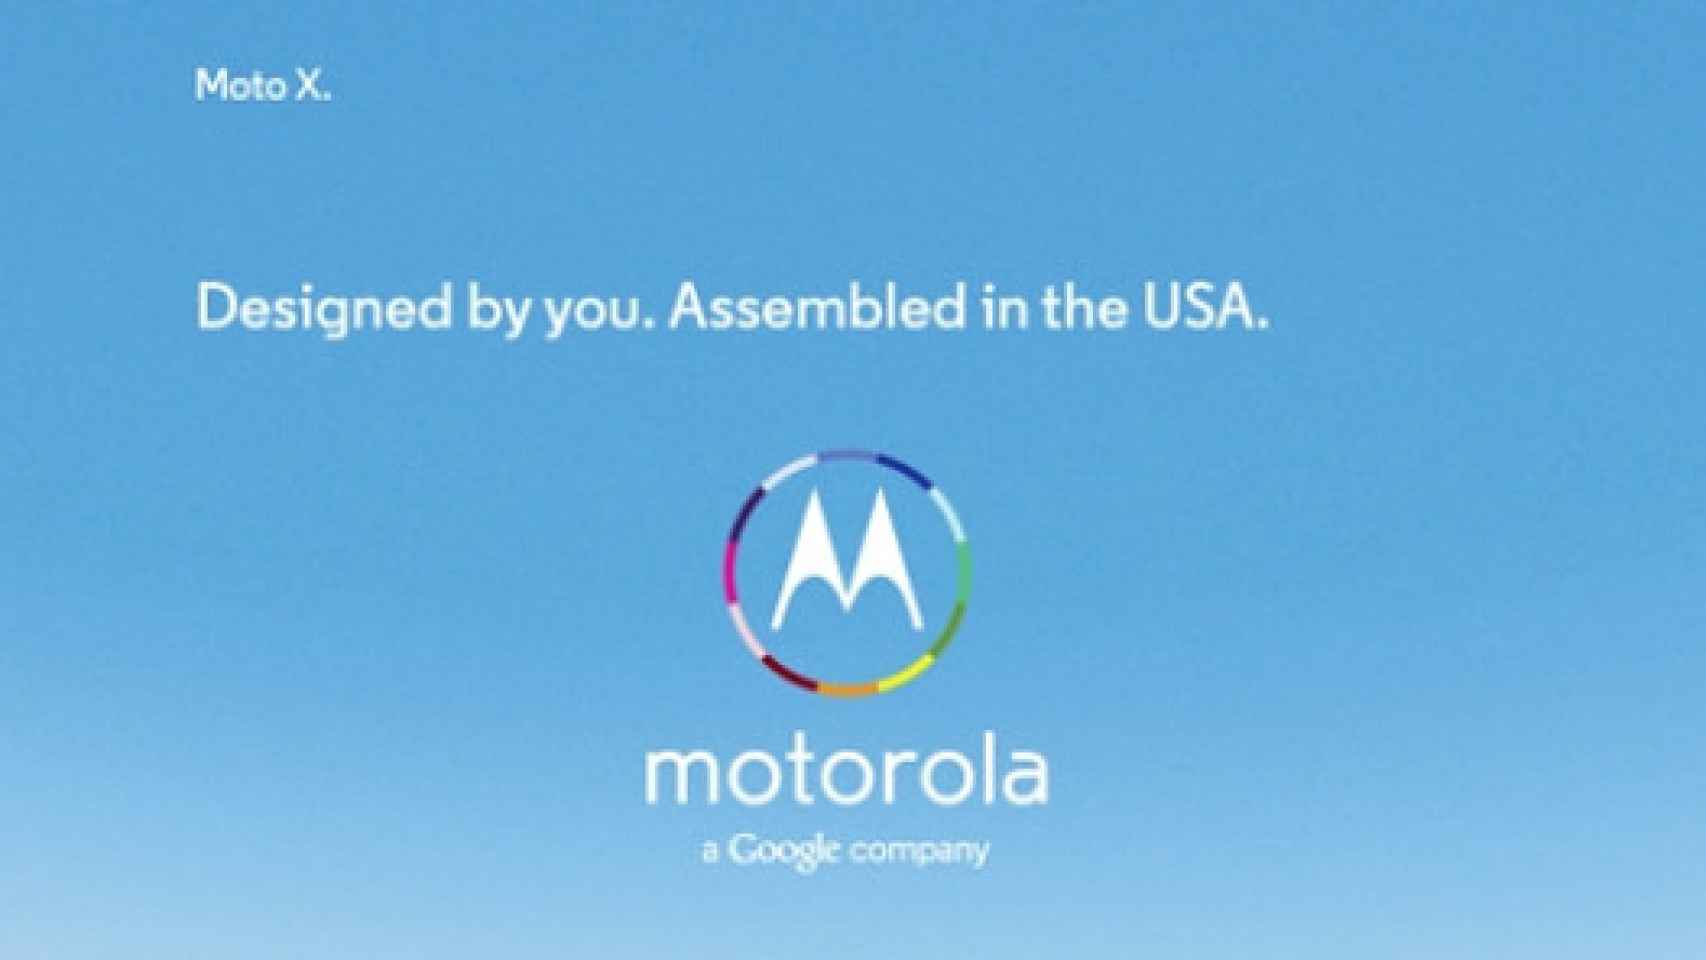 La verdadera razón de que el Motorola Moto X sea ensamblado en EE.UU